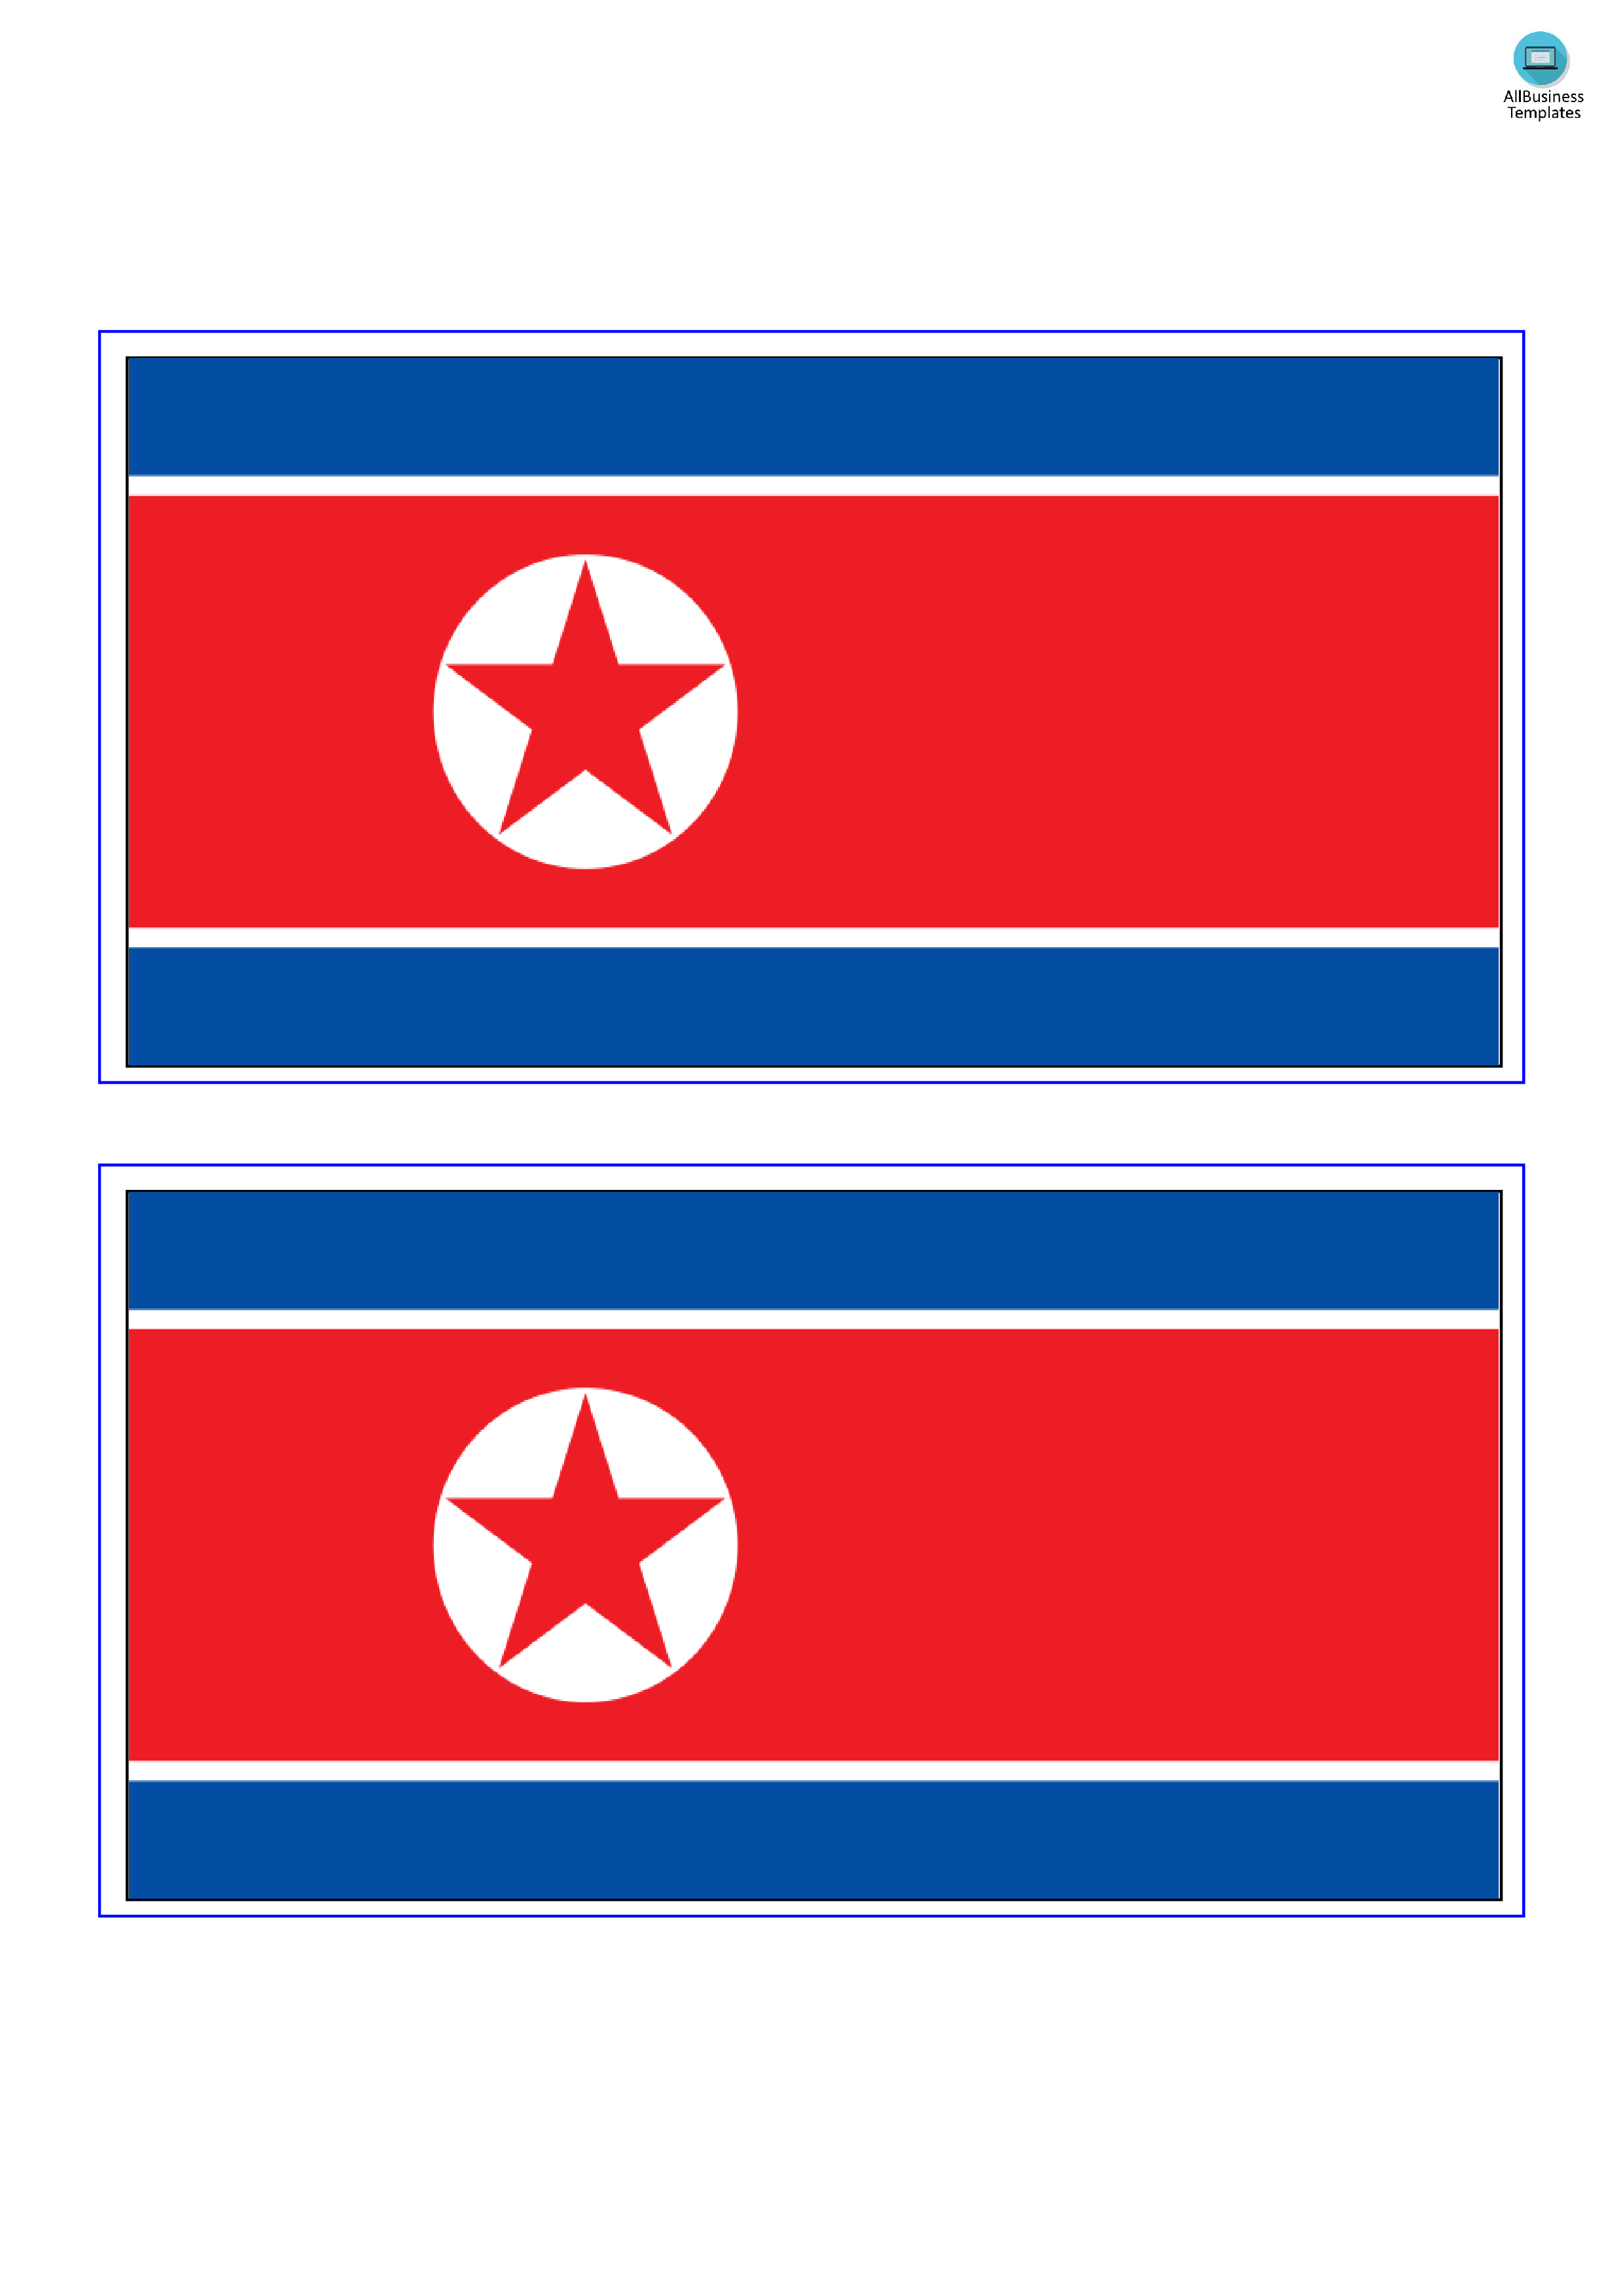 north korea flag plantilla imagen principal